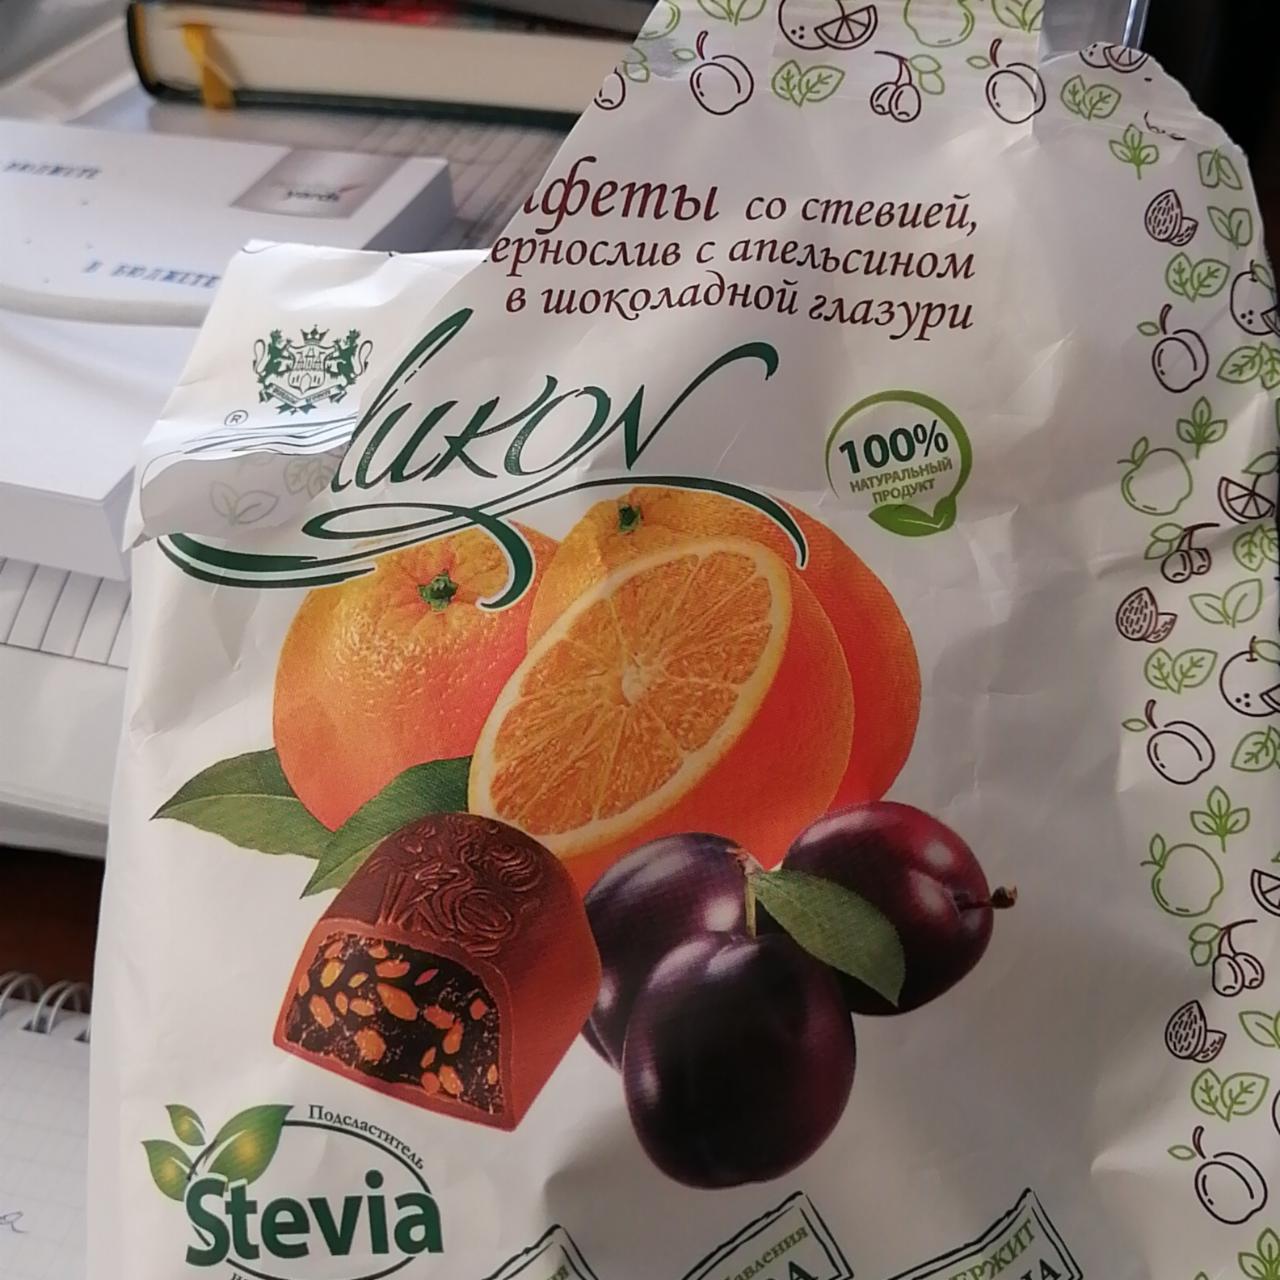 Фото - Конфеты чернослив с апельсином в шоколаде Шикон